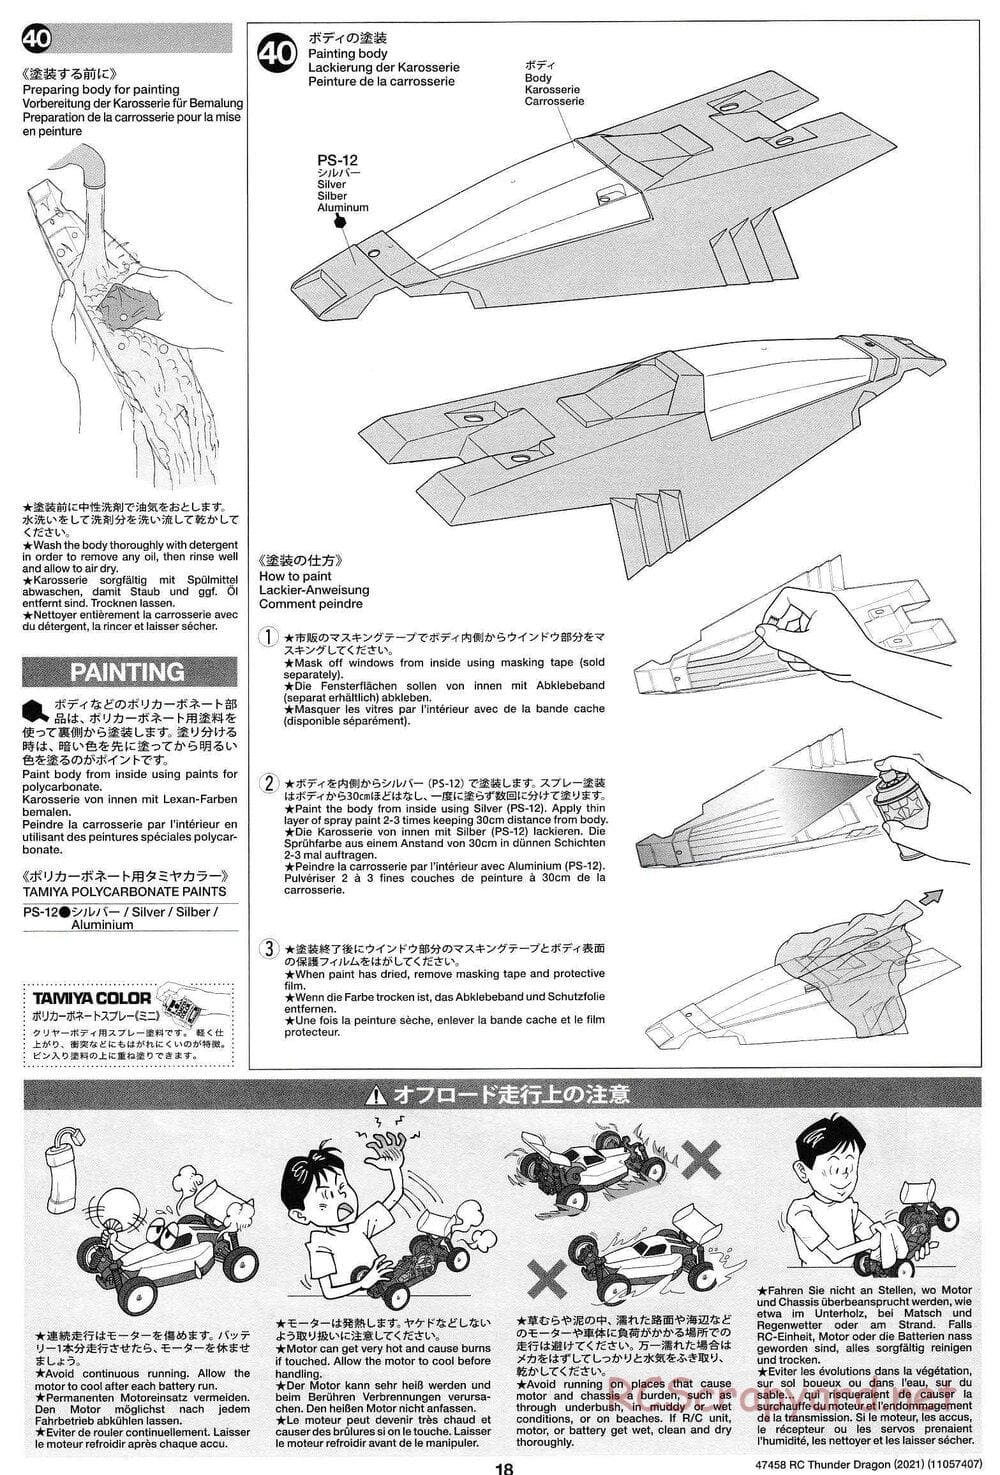 Tamiya - Thunder Dragon (2021) Chassis - Manual - Page 18